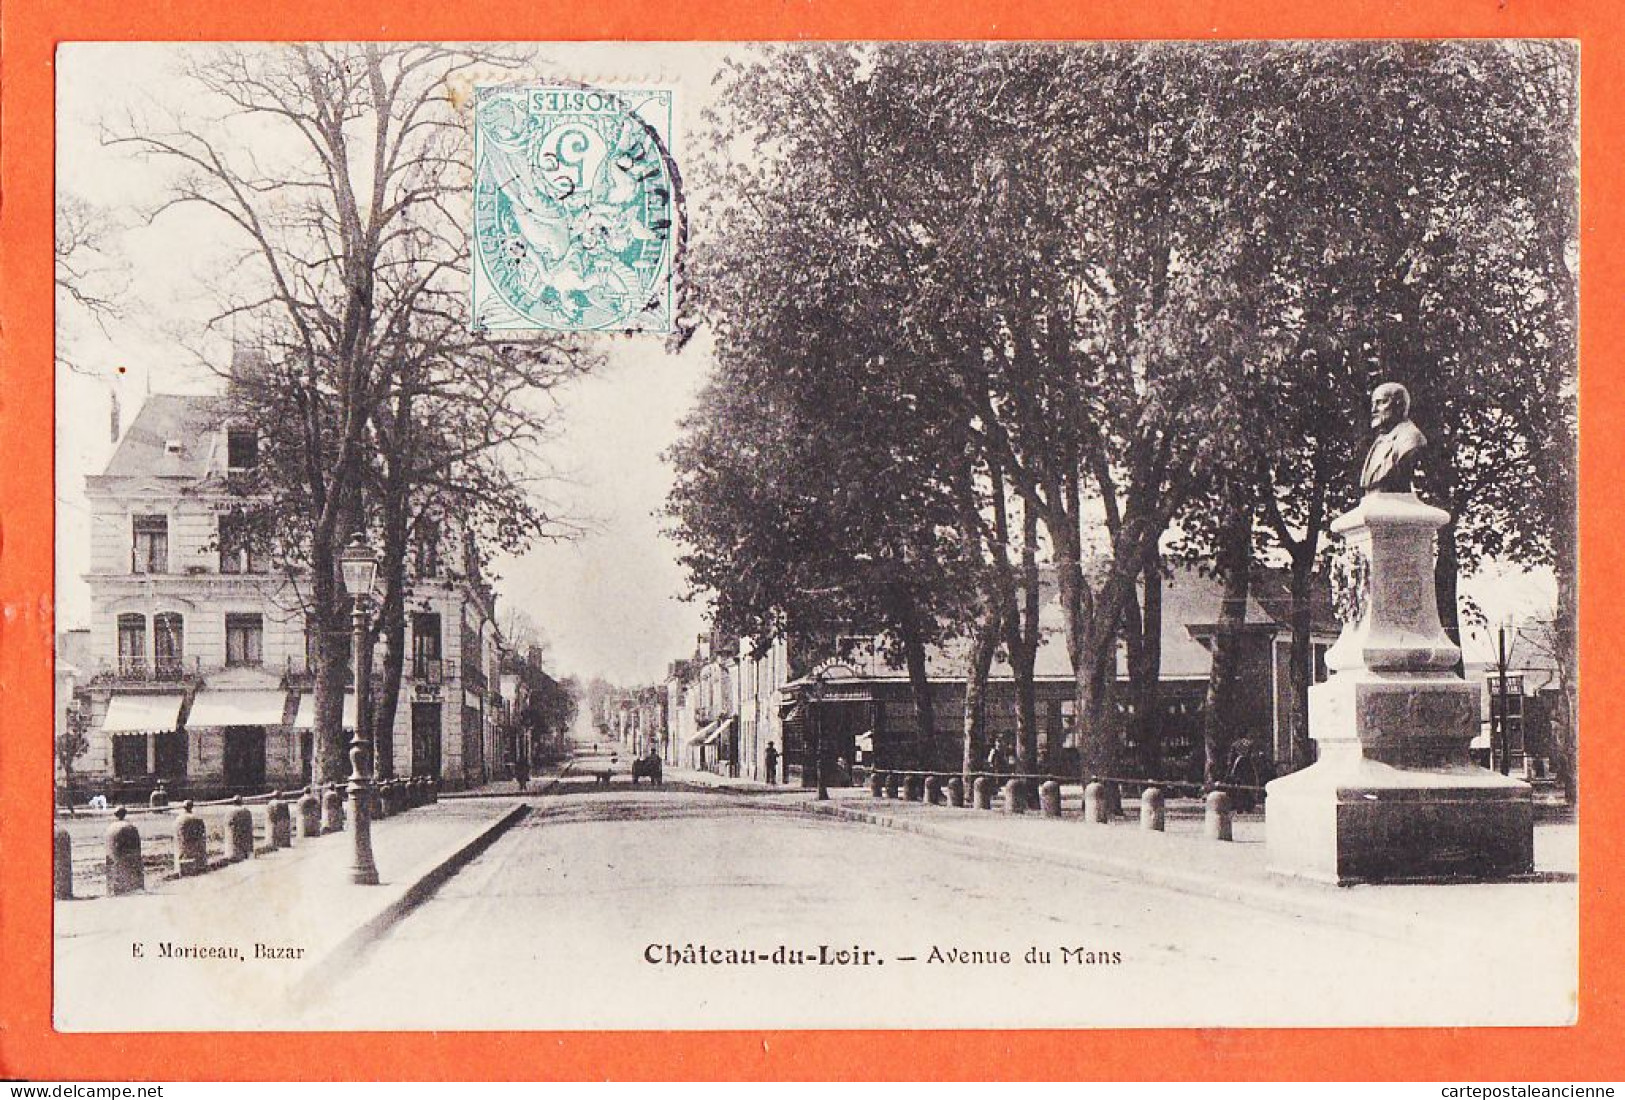 35273 / CHATEAU-du-LOIR 72-Sarthe Avenue MANS 1909 à TRIDEMY Rue Glacière Gentilly -Edition Bazar MORICEAU - Chateau Du Loir